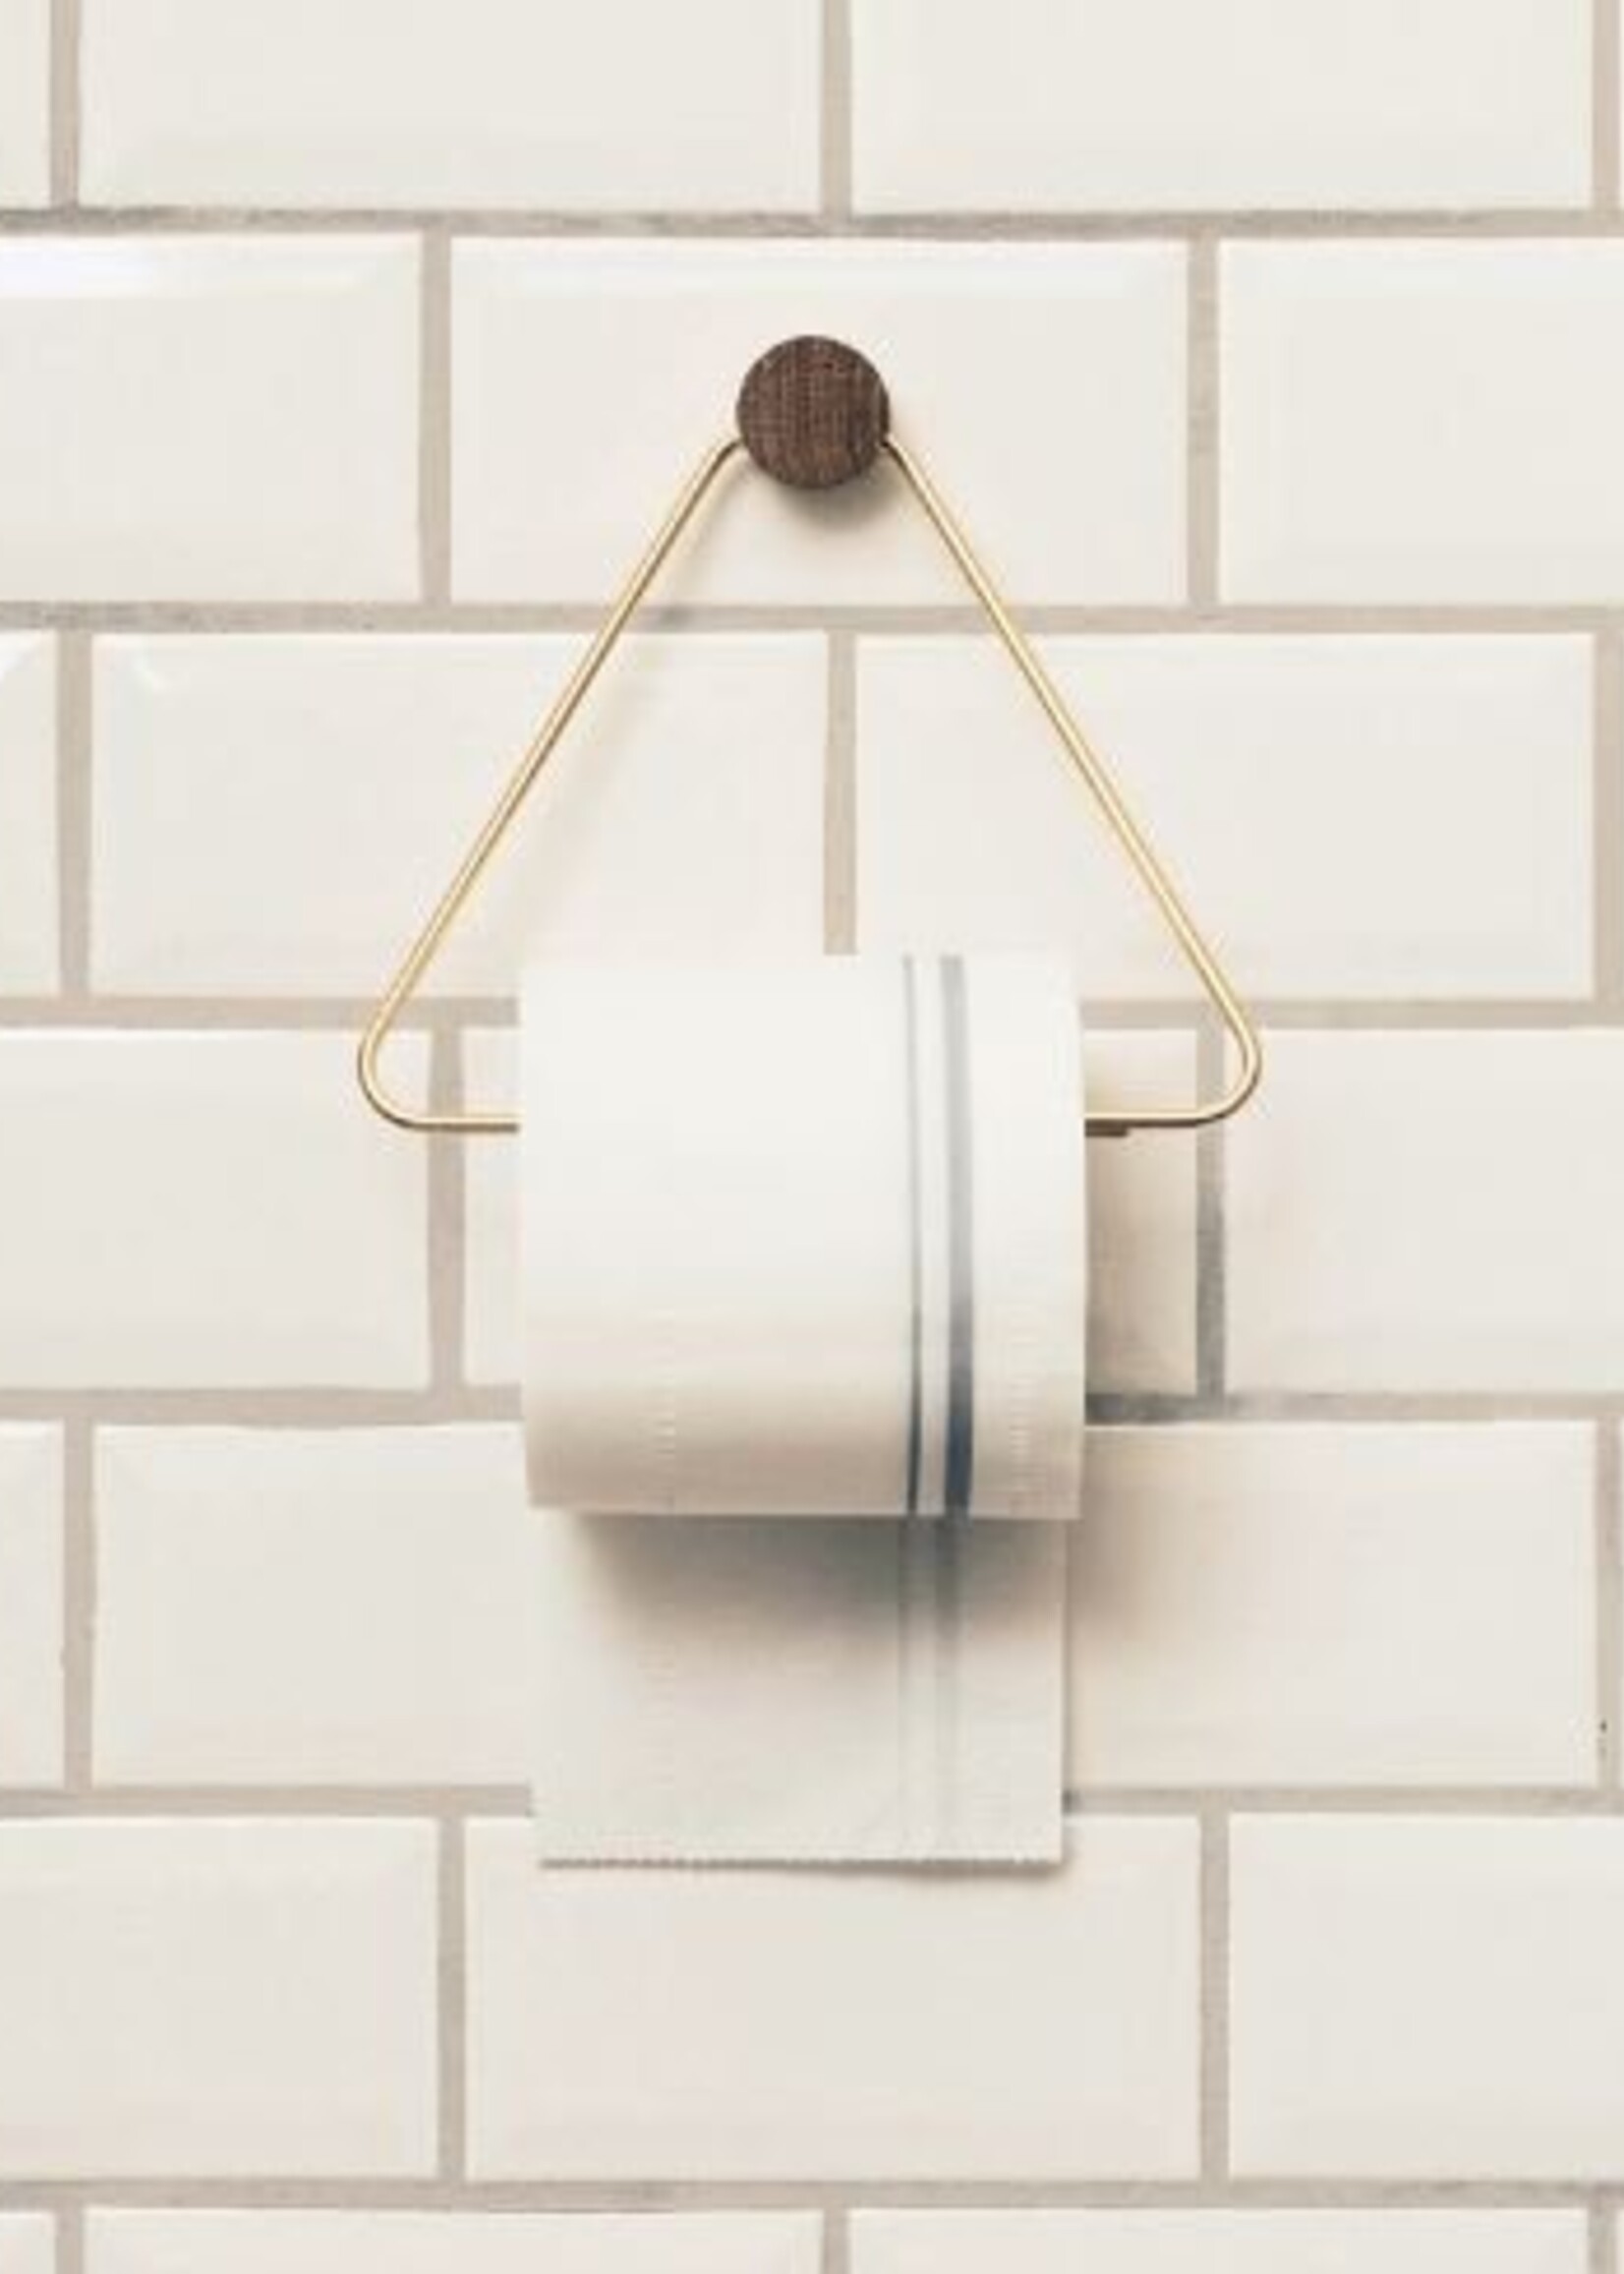 Ferm Living Porte Papier De Toilette - Laiton